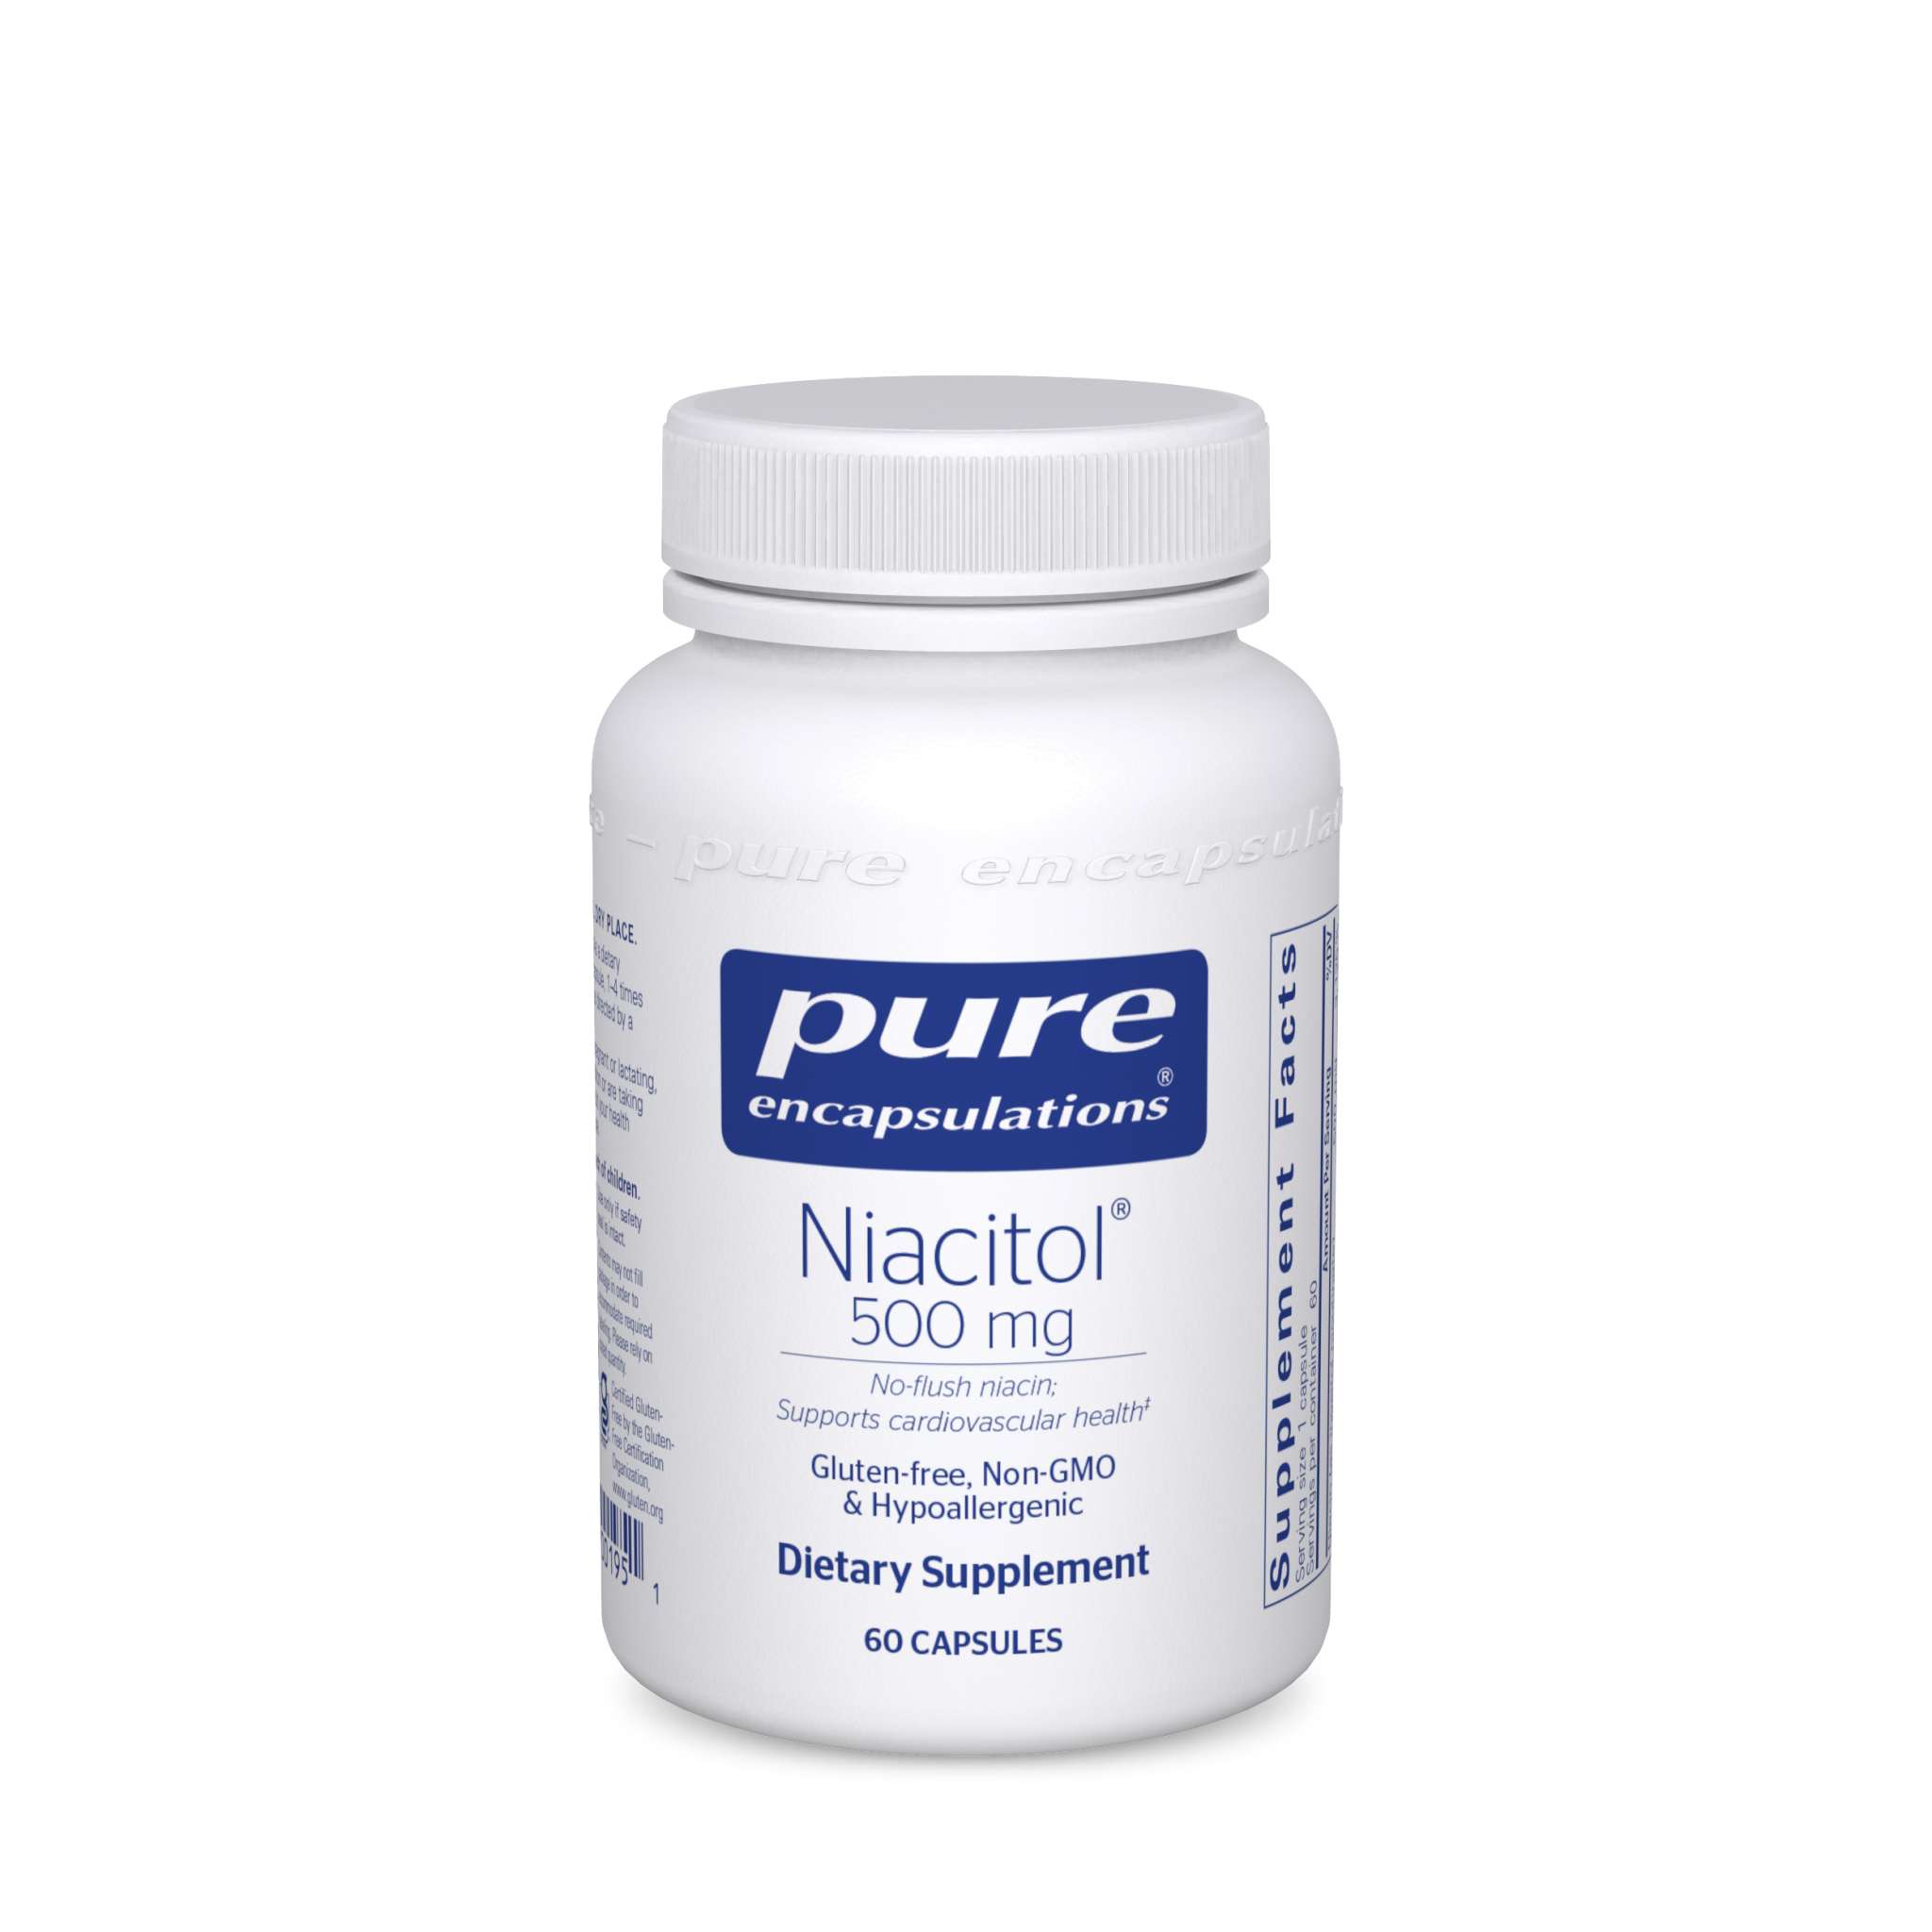 Pure Encapsulations - Niacitol 500 mg (No Flush Niac